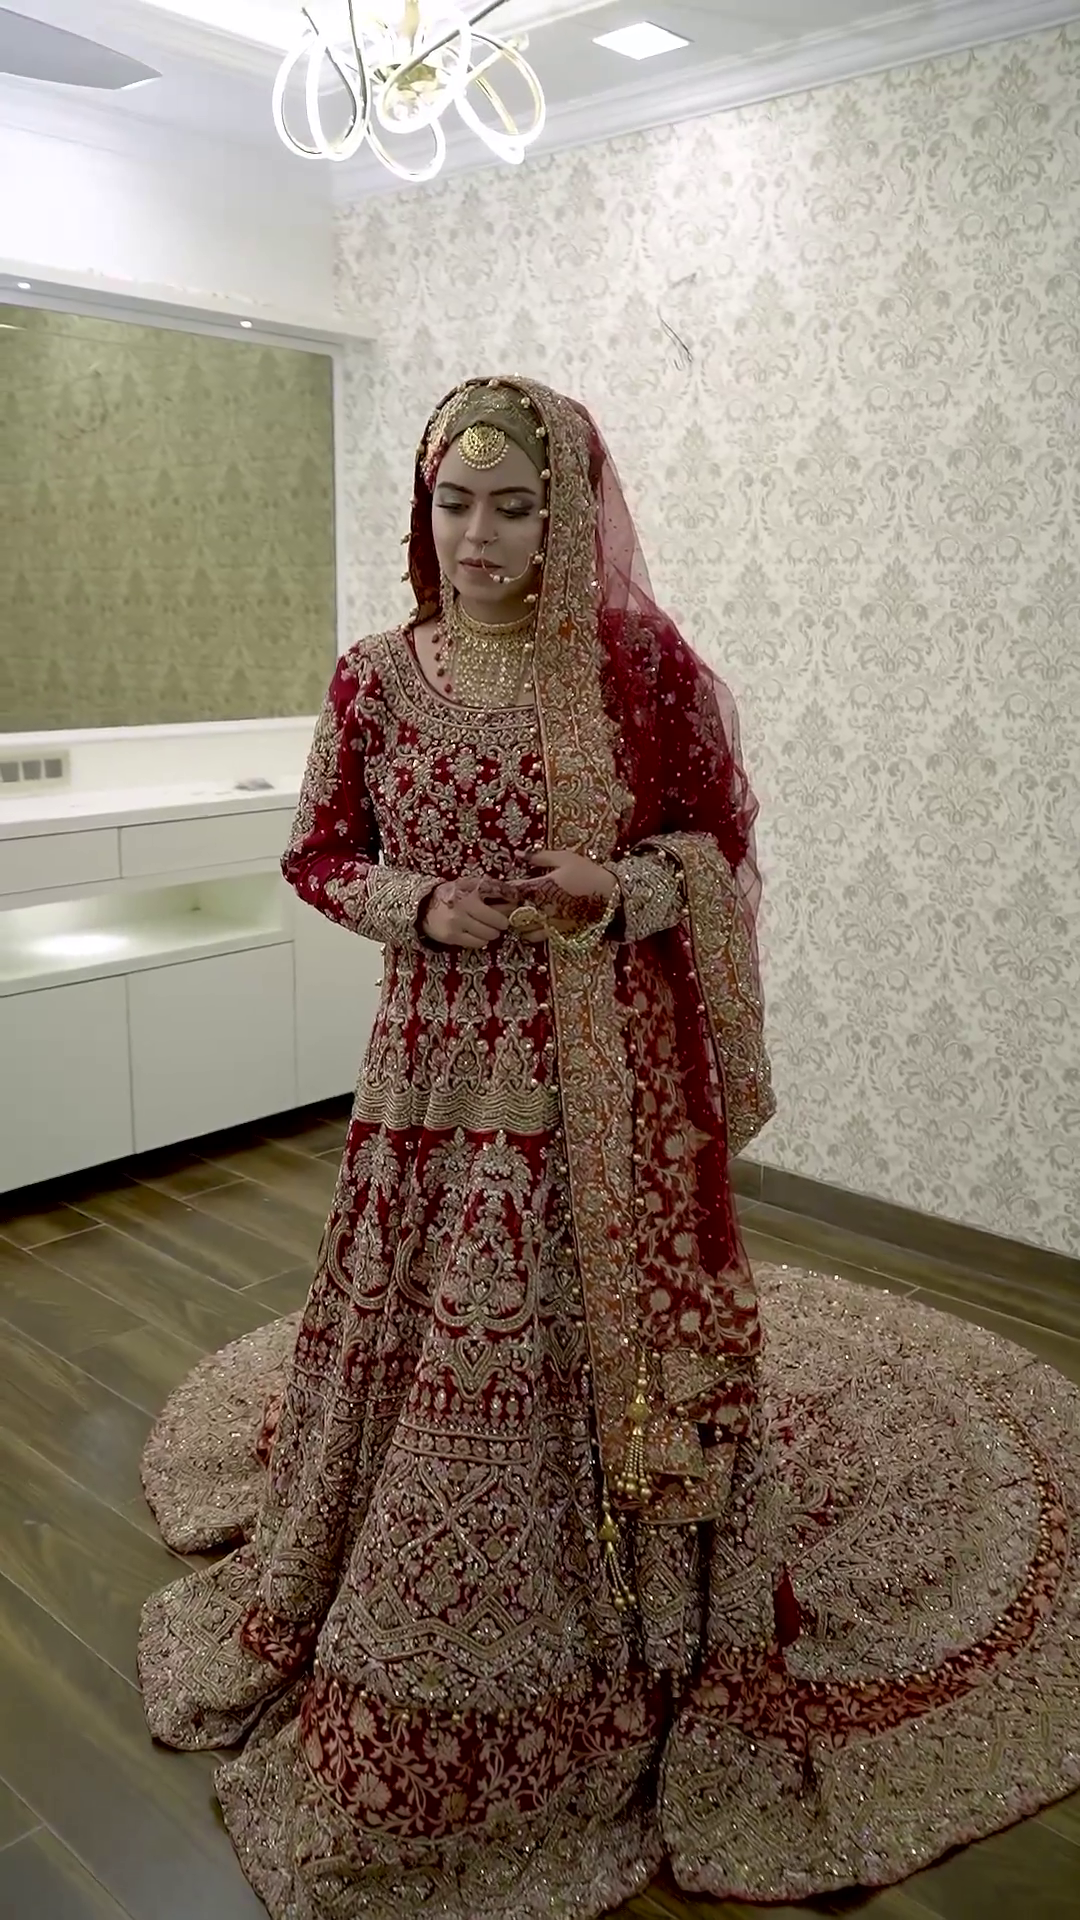 Sammi Sheath Wedding Dress by Wilderly Bride - WeddingWire.com